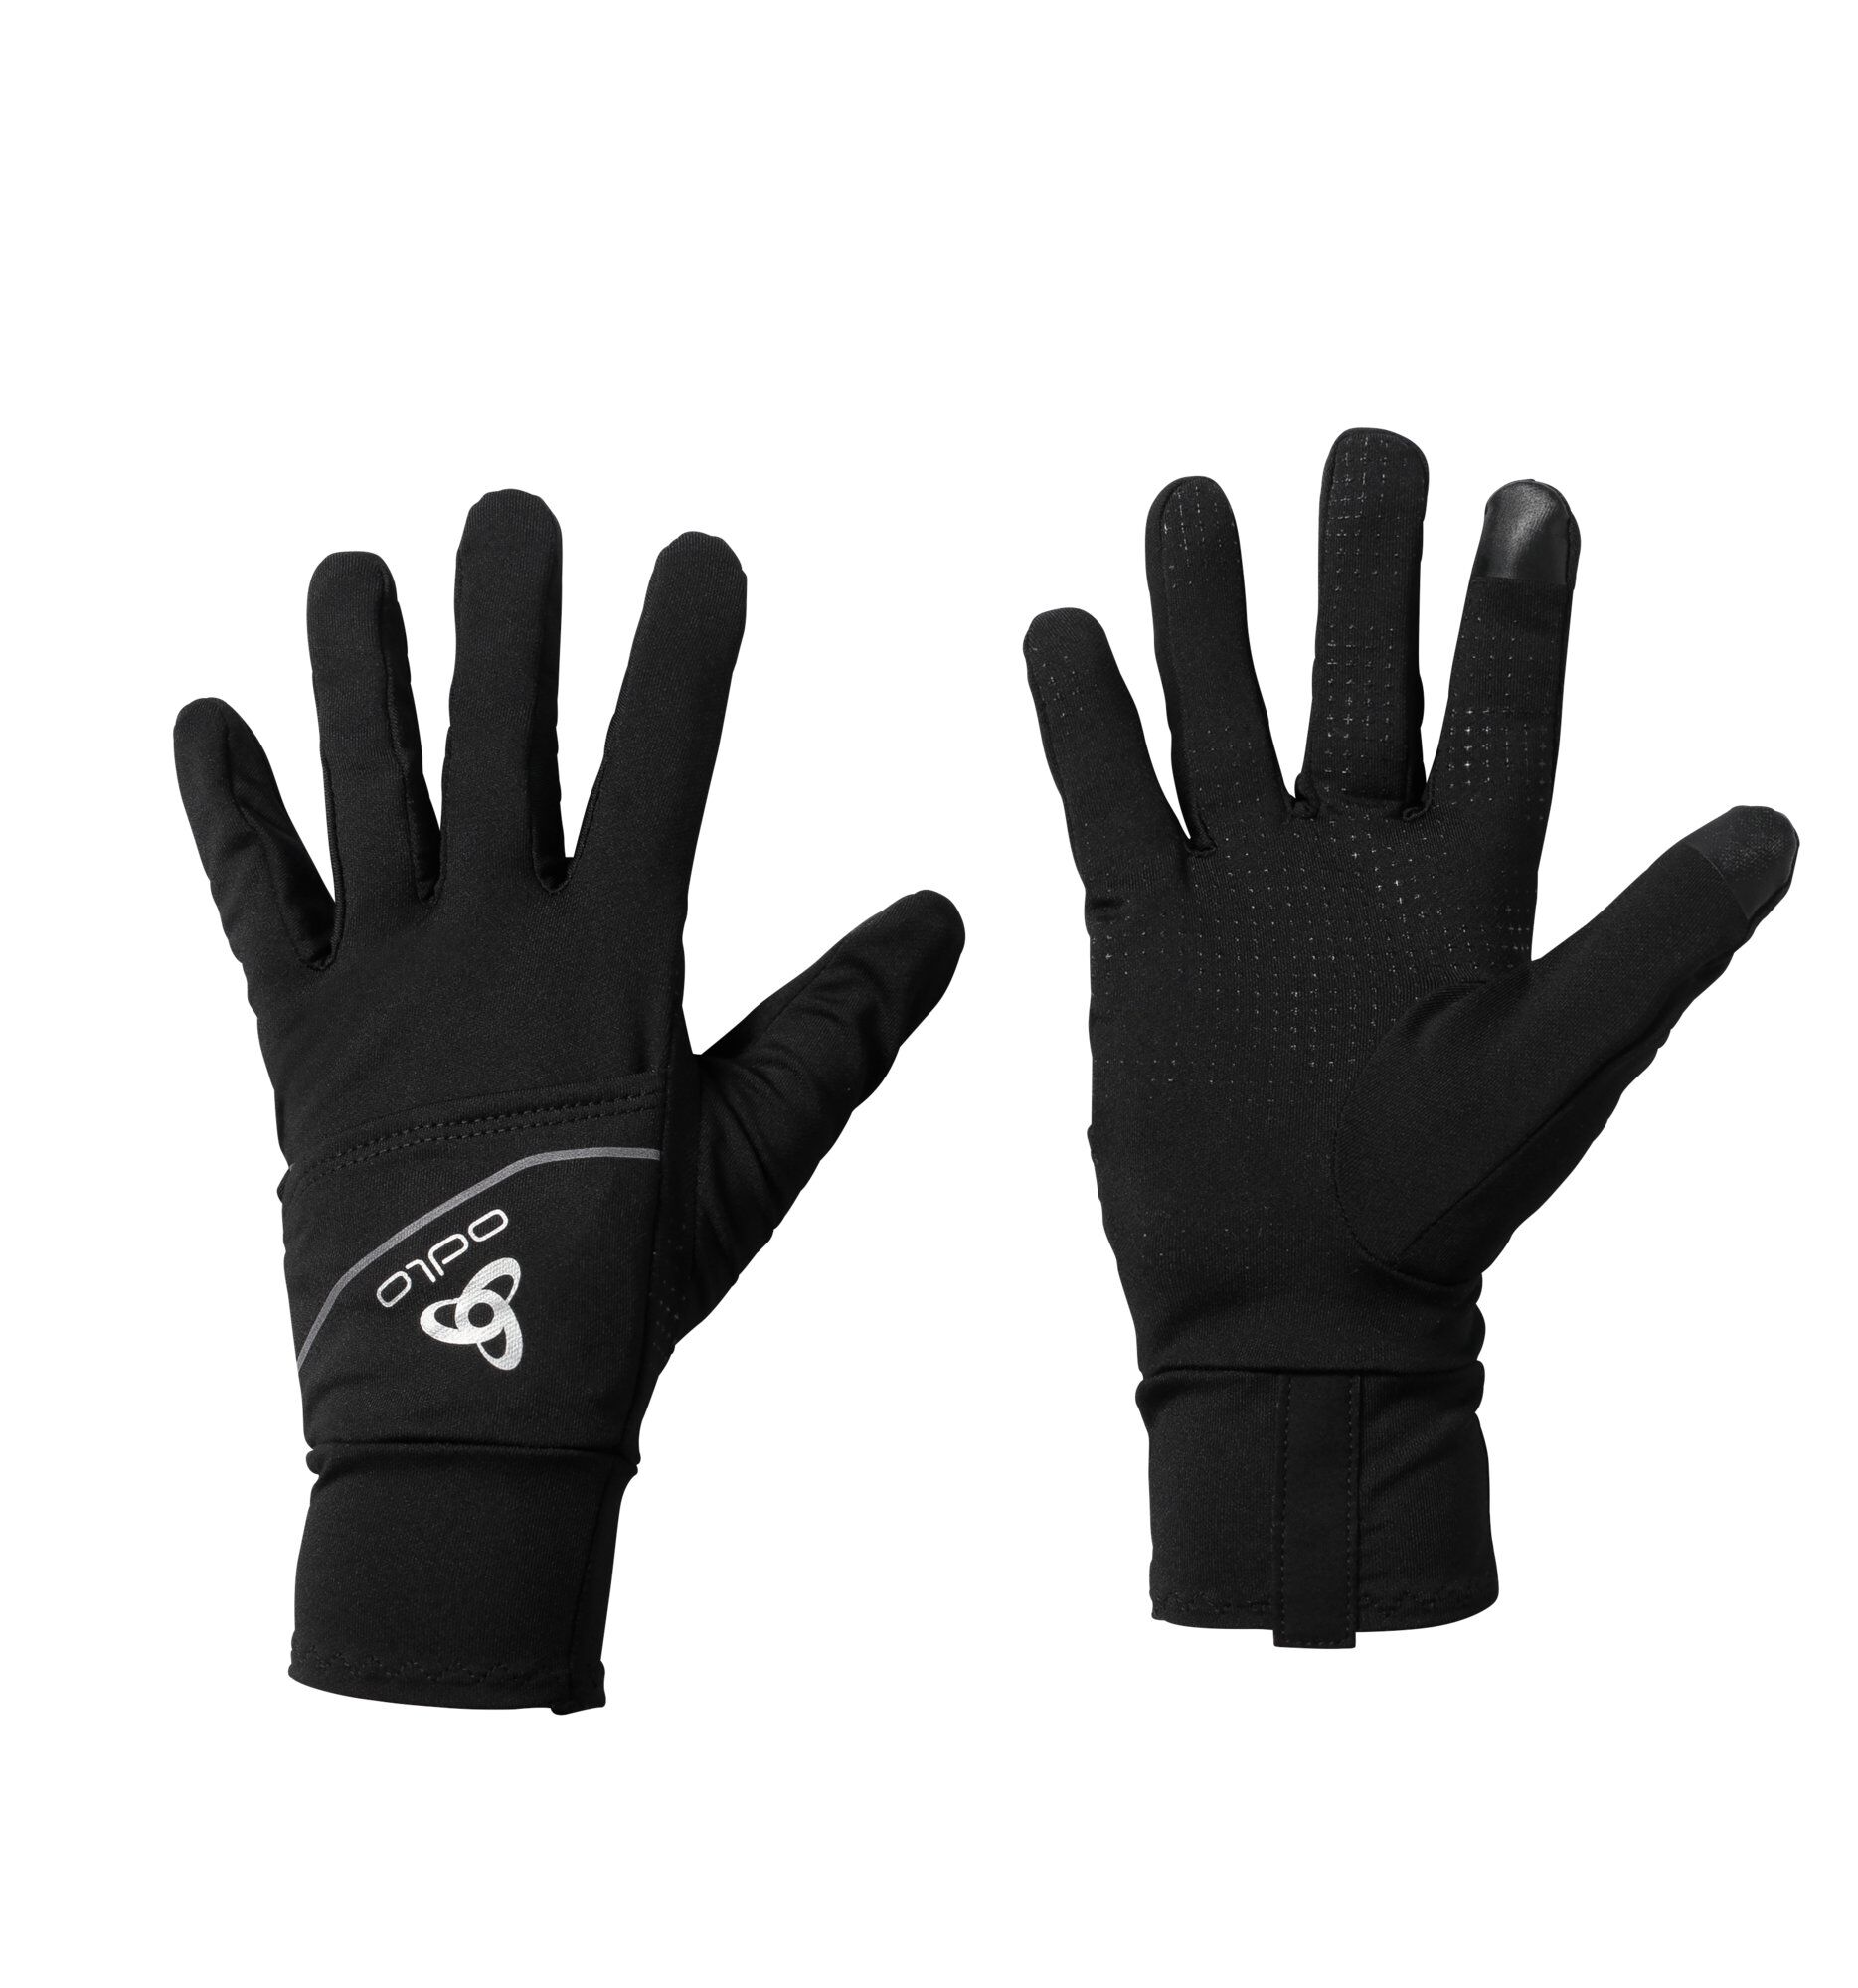 Odlo Intensity Cover Safety Light Glove